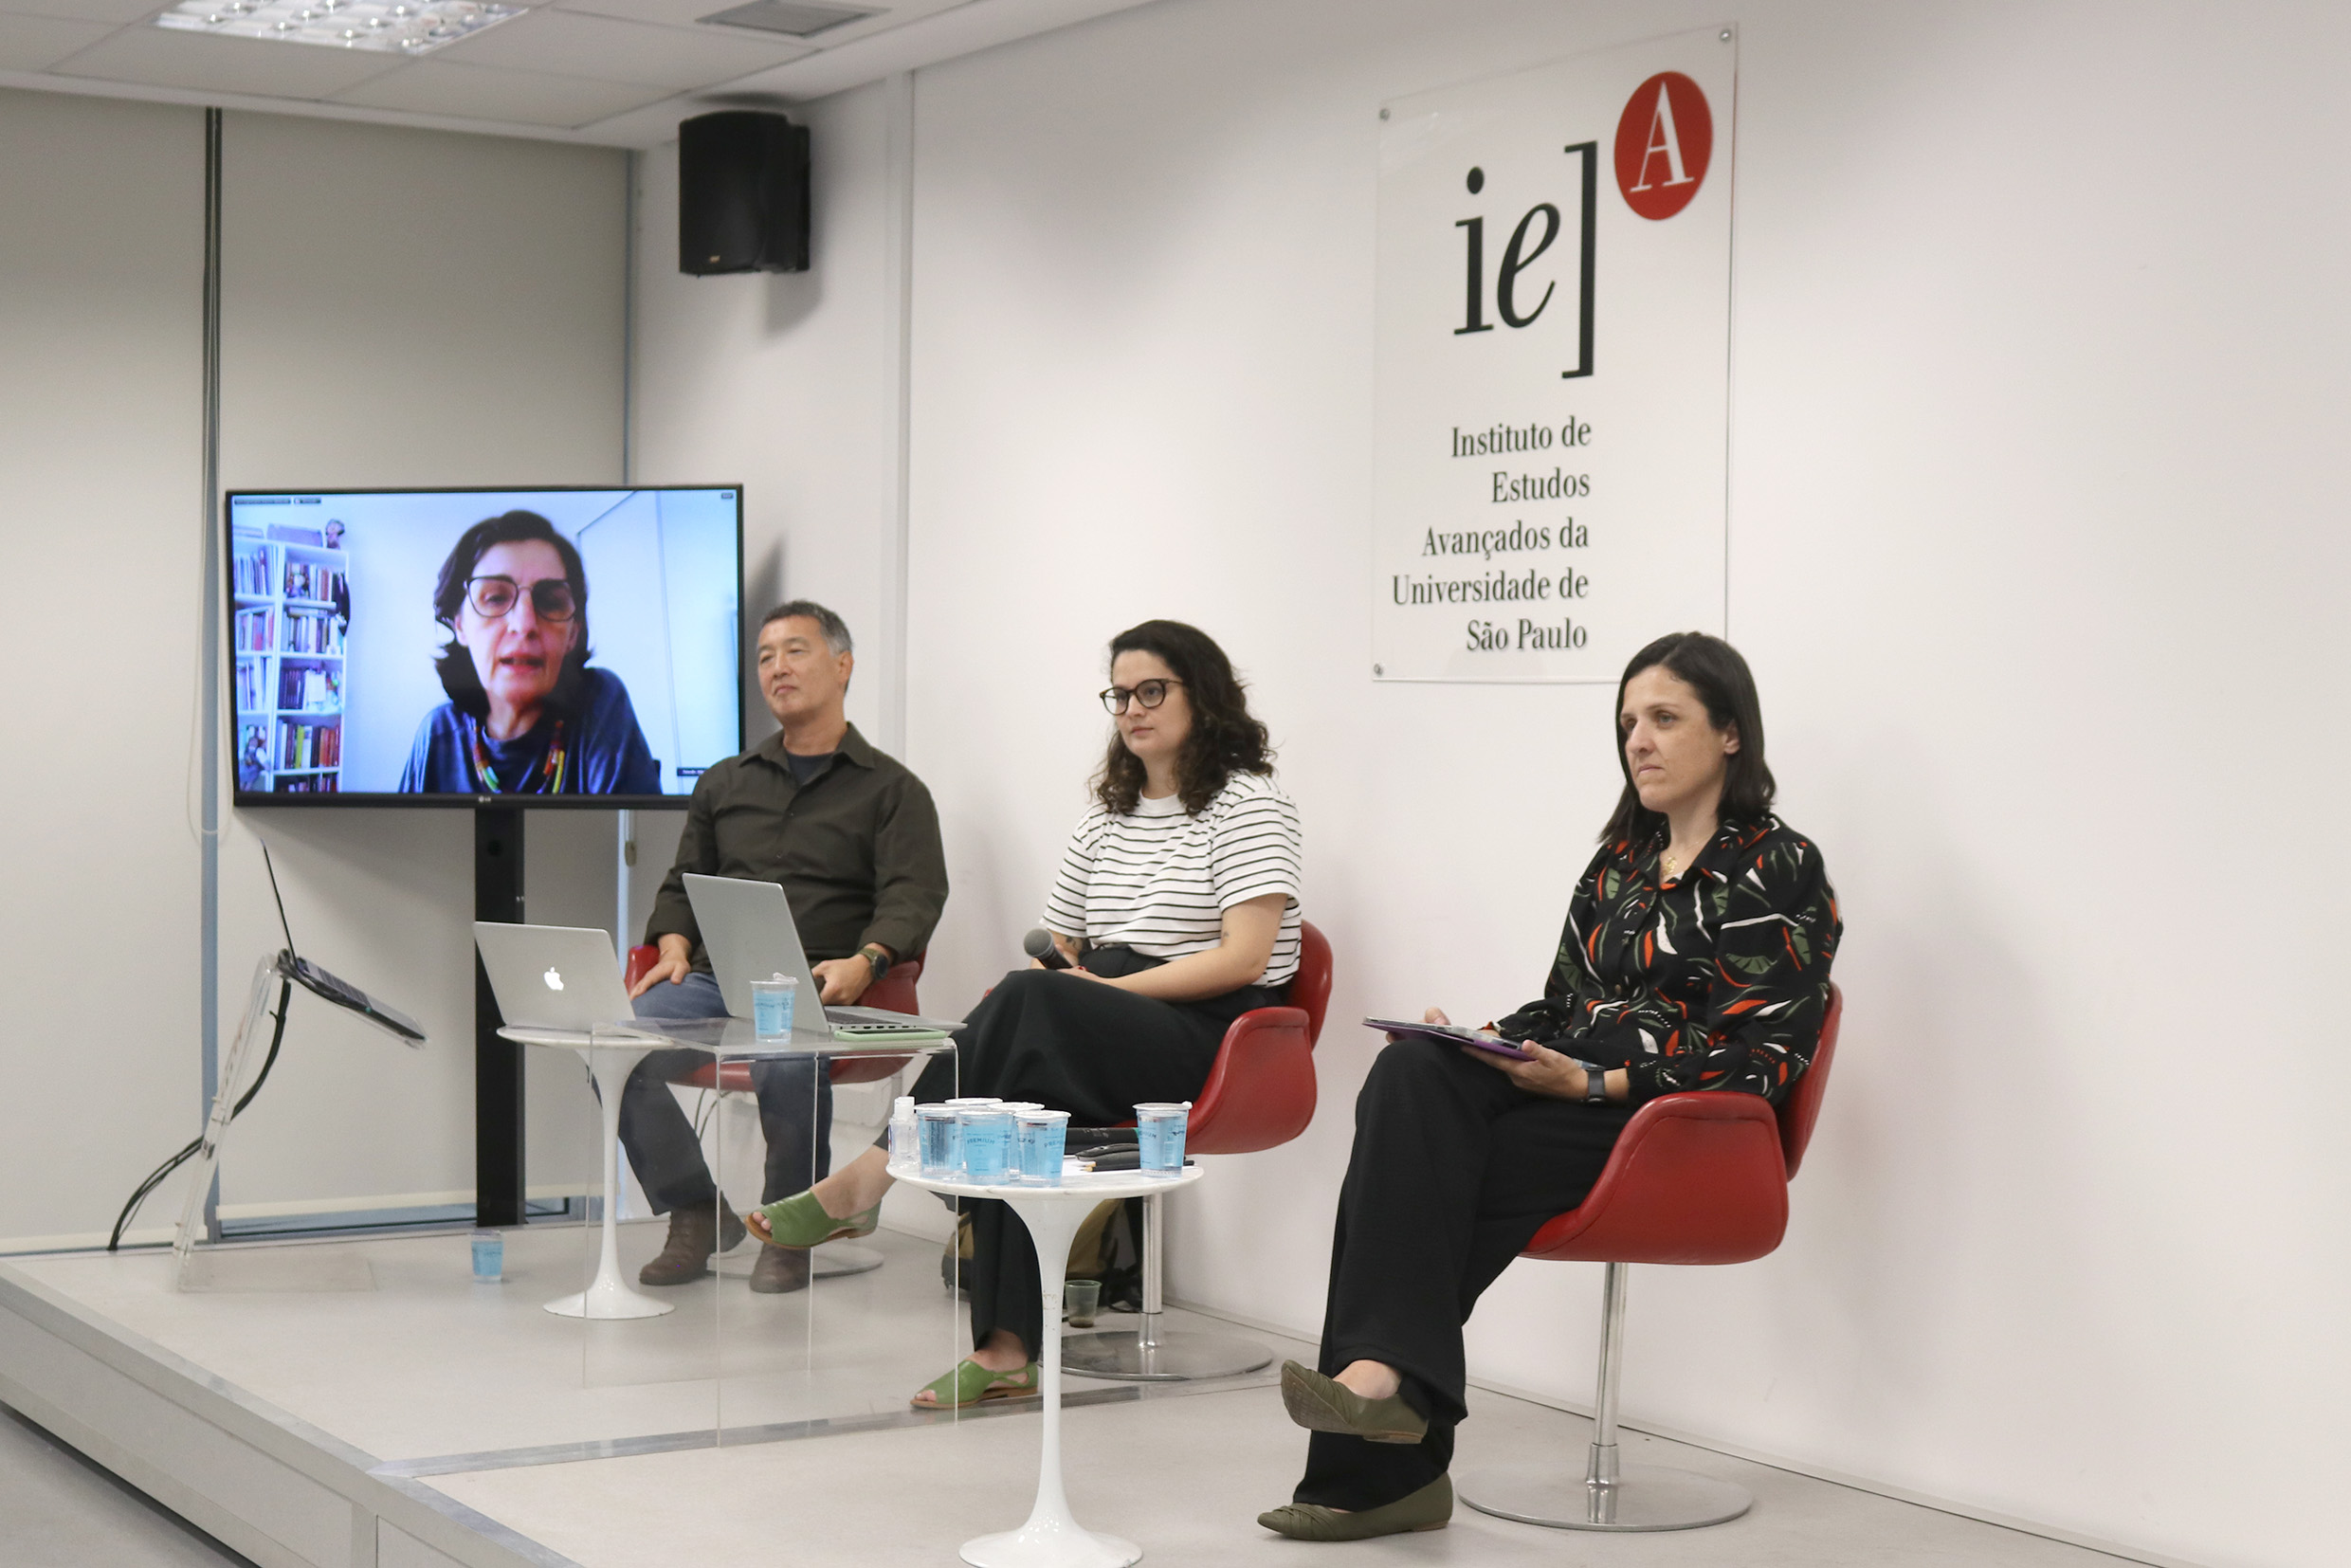 Wânia Pasinato, via vídeo-conferência, Paulo César Endo, Carla Vreche e Ludmila Murta